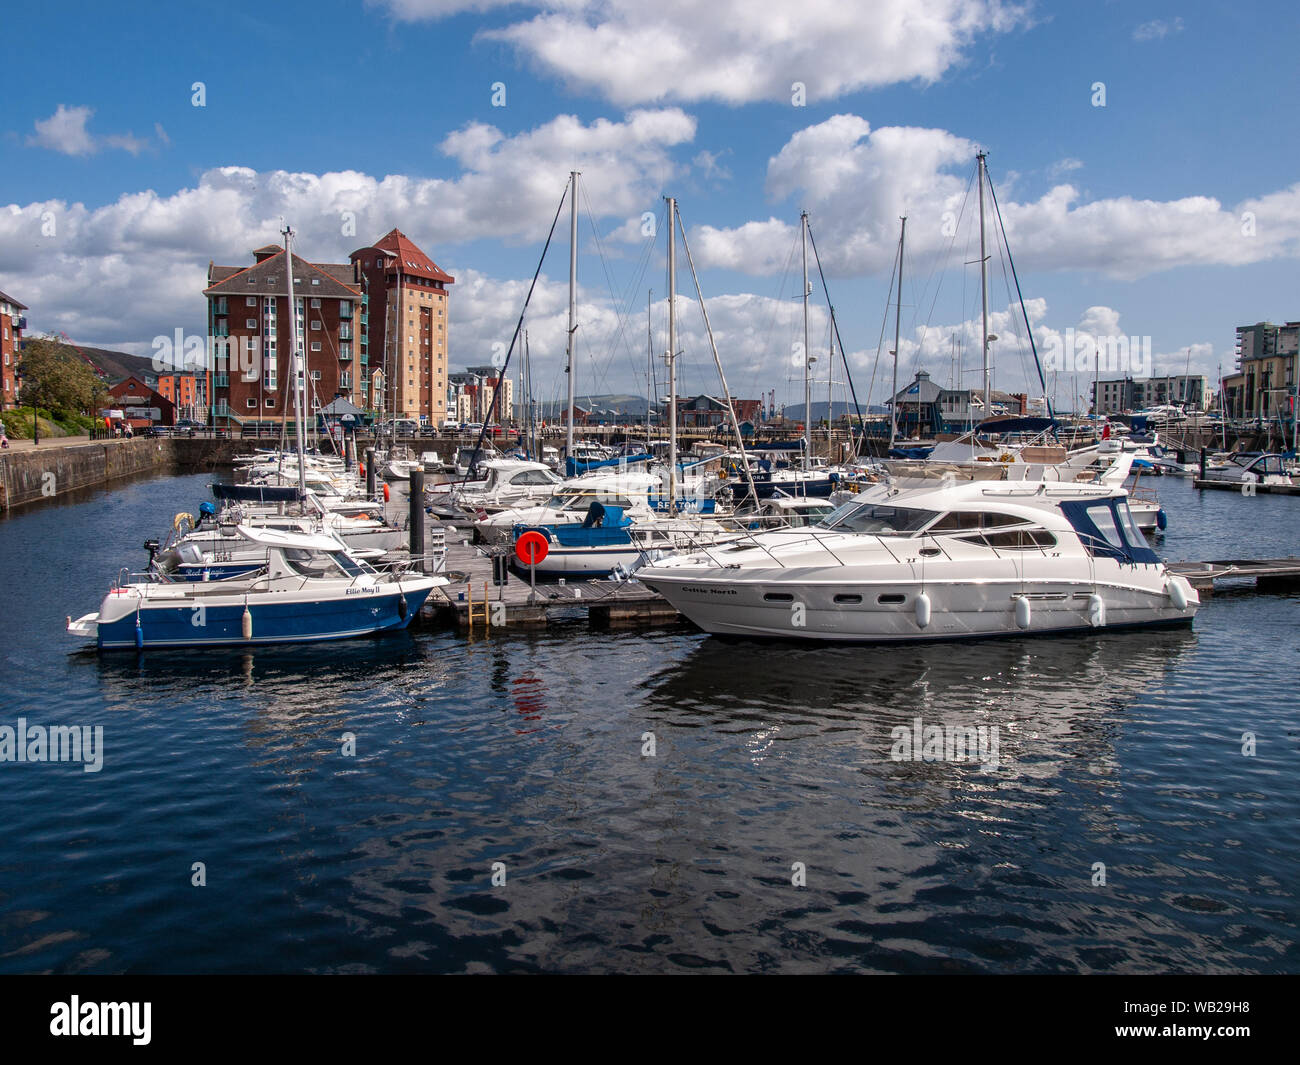 Dunstaffnage Marina Bateaux et yachts amarrés au ponton flottant. Swansea, Pays de Galles, Royaume-Uni. Banque D'Images